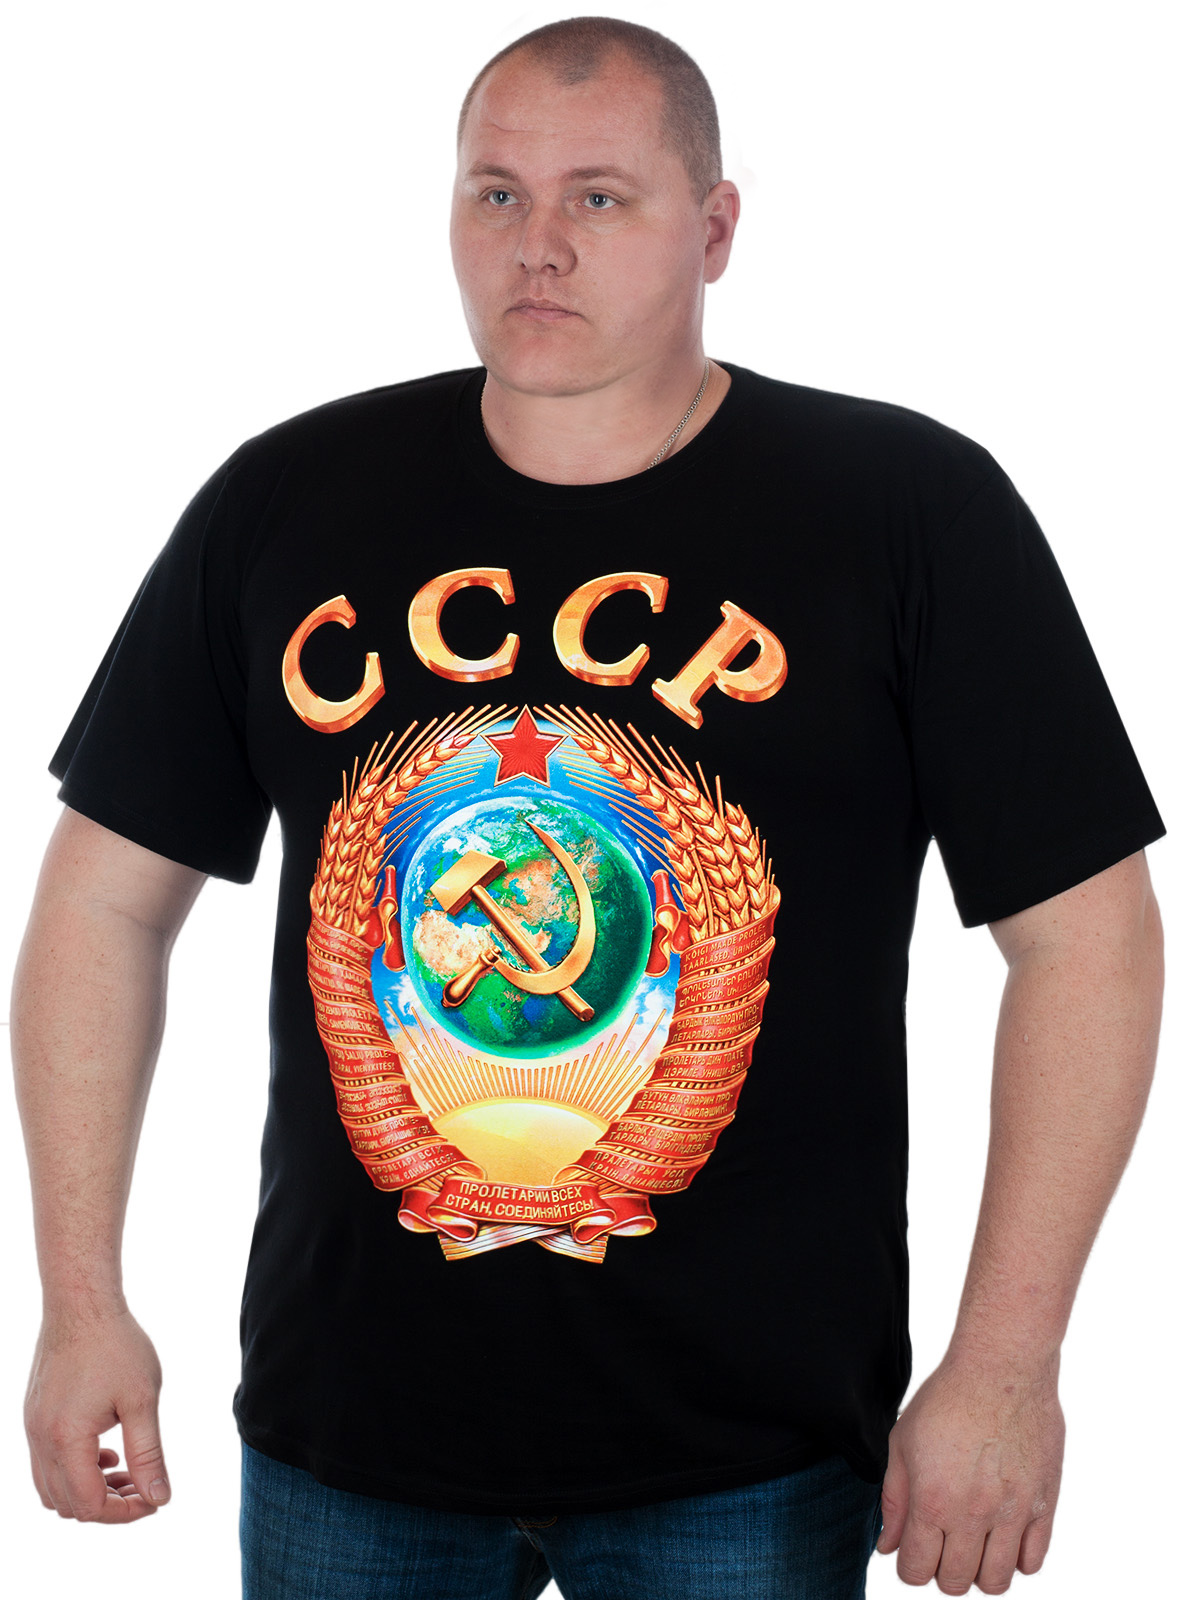 Купить в Москве мужскую футболку с гербом СССР – все размеры